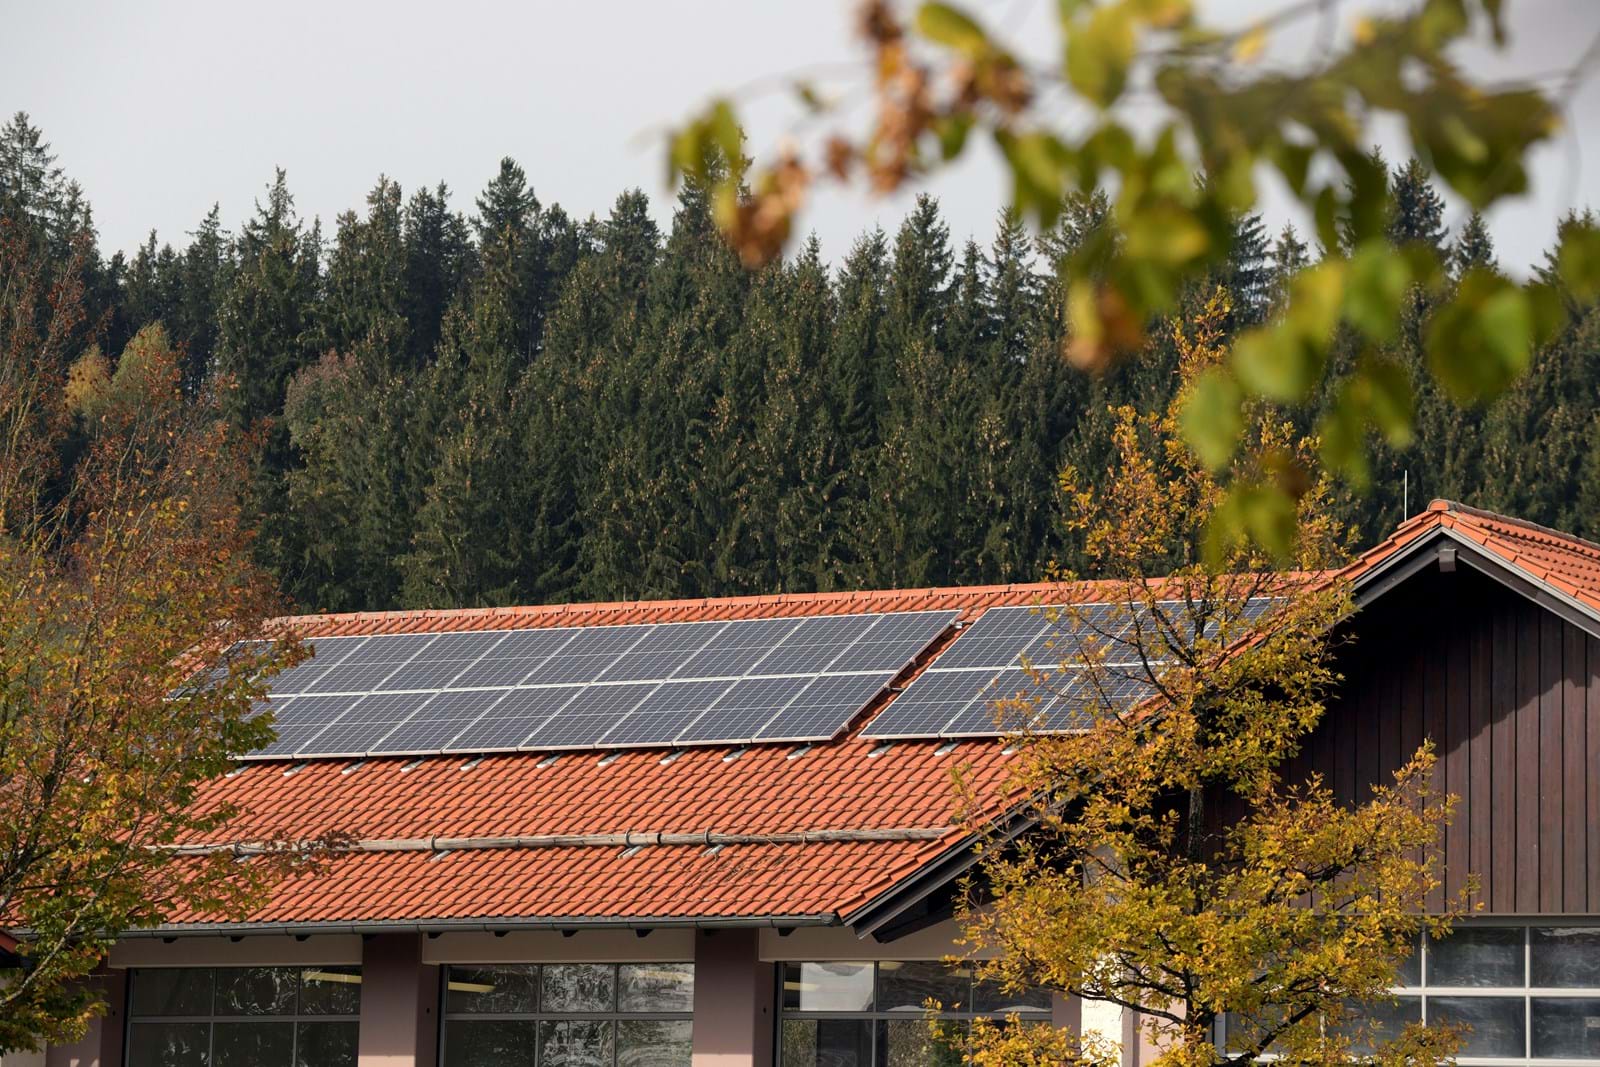 Mit Solarstrom aus der Region Wärme produzieren – das testet LEW gemeinsam mit Partnern im Projekt FLAIR. Konkret geht es darum, den Strom aus lokalen Photovoltaikanlagen für das Laden von Nachtspeicherheizungen zu nutzen.